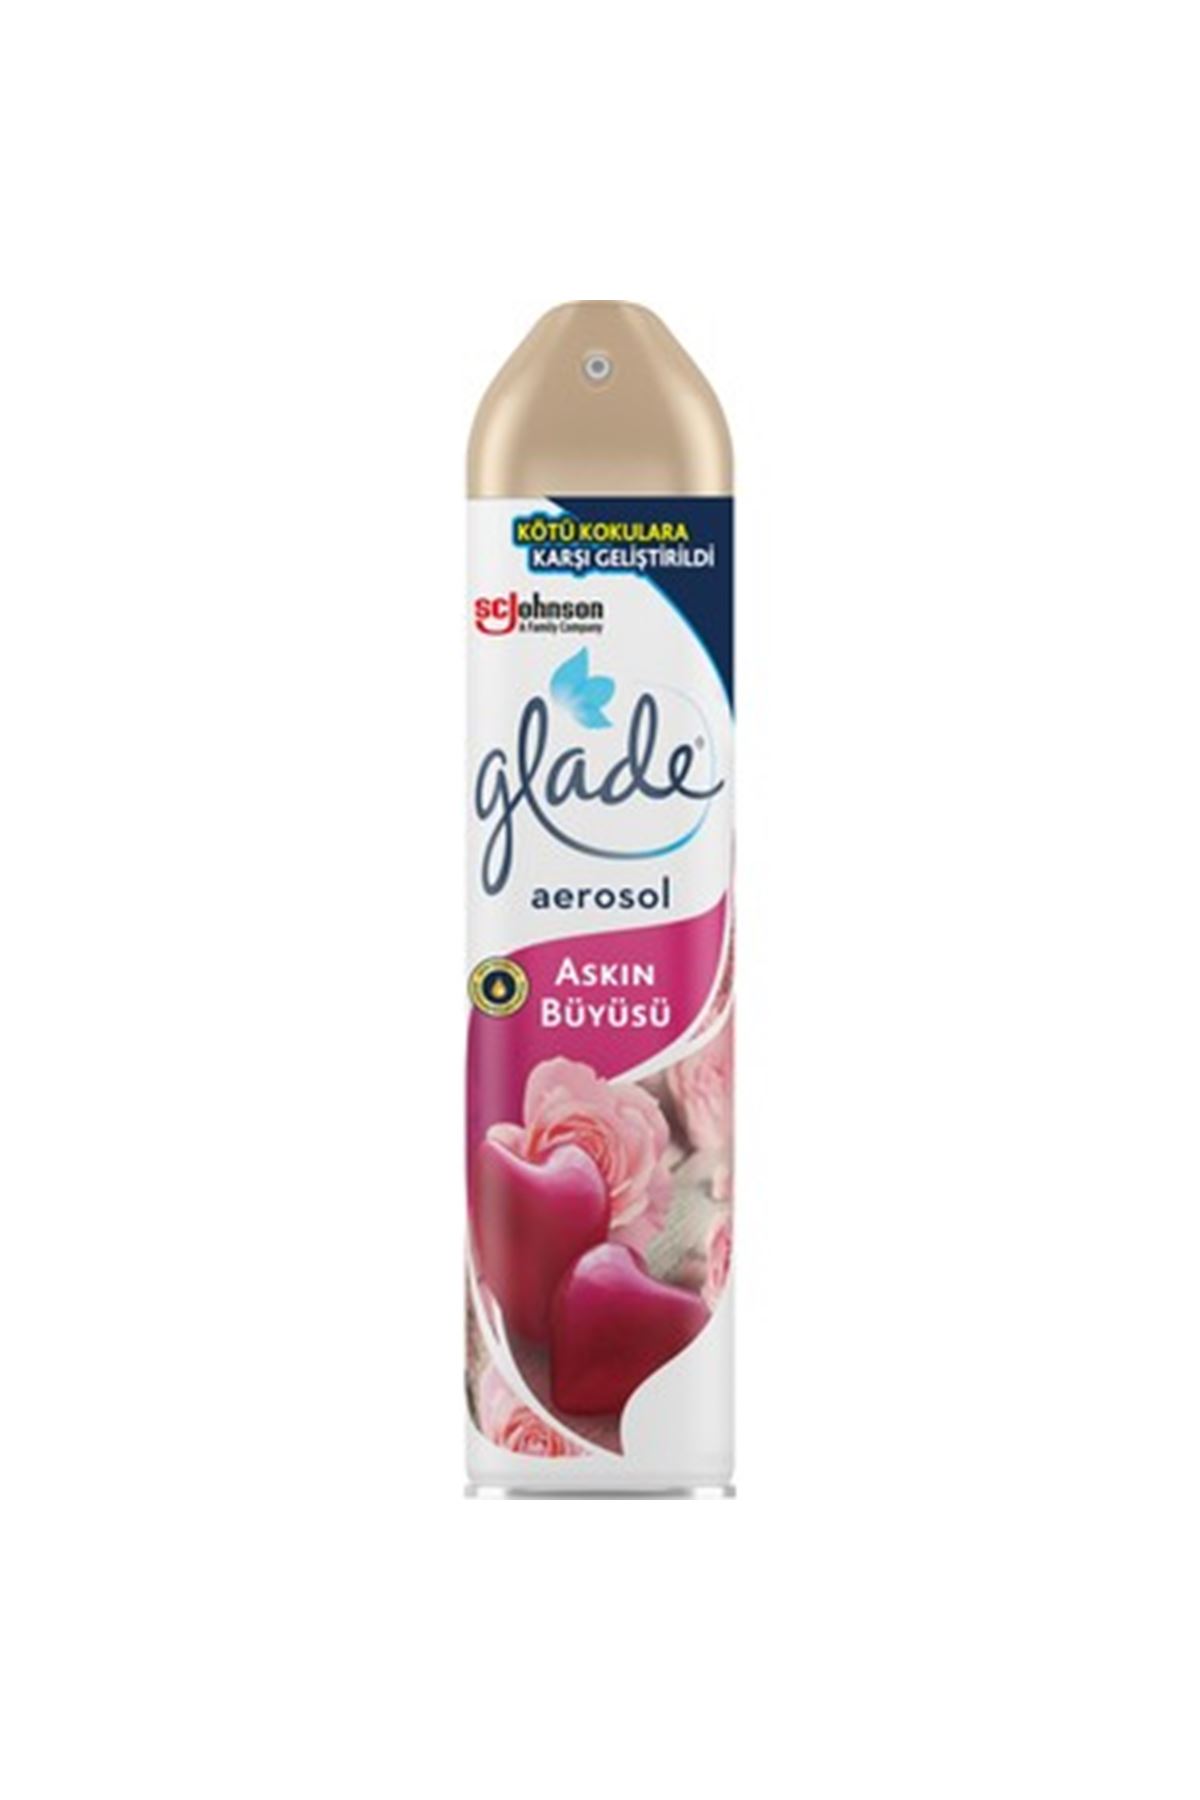 Glade Aerosol Oda Parfumu Aşkın Büyüsü 300 ML